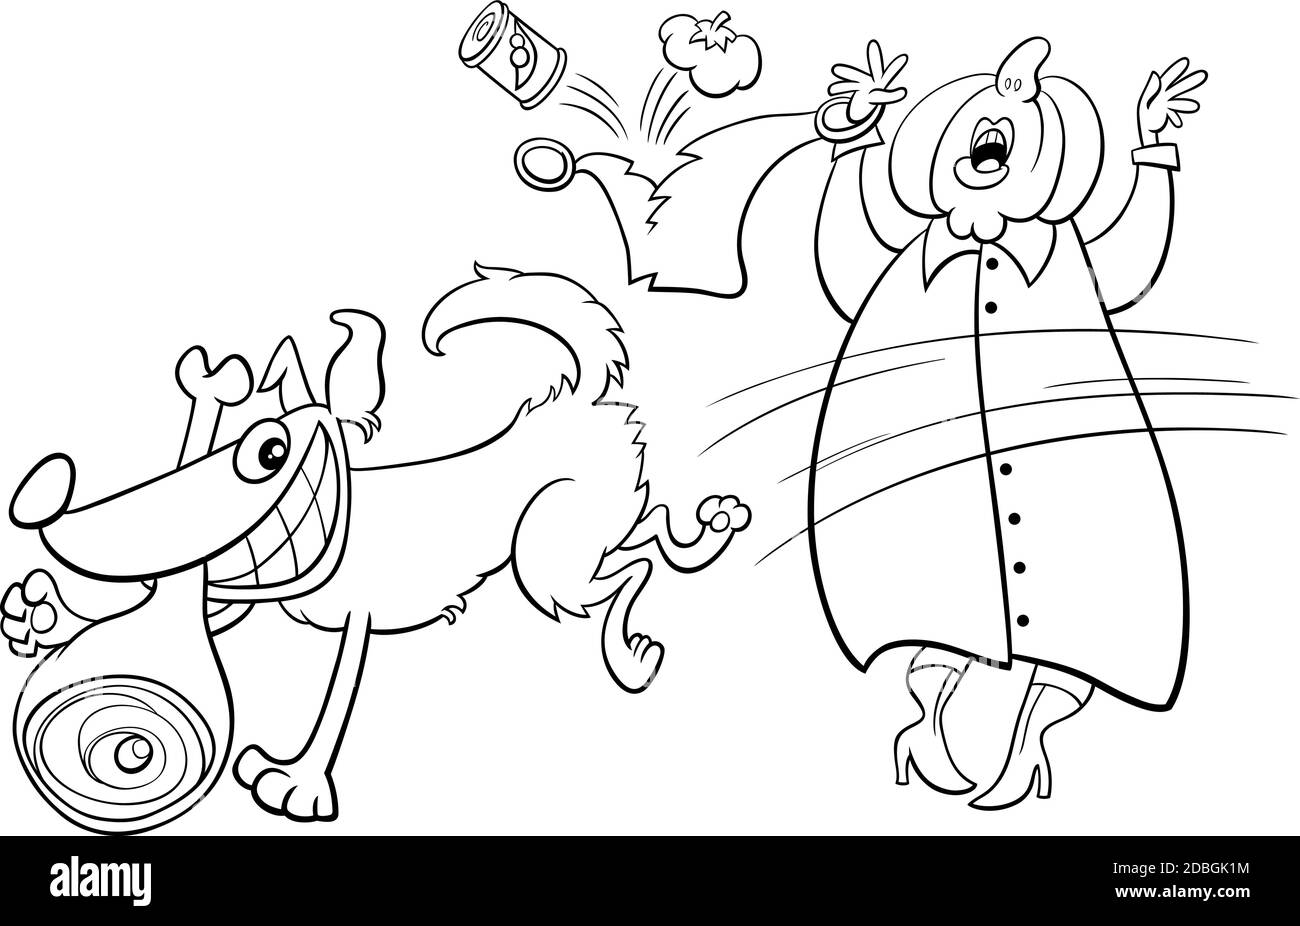 Illustration de dessin animé noir et blanc d'un chien méchant drôle jambon d'une vieille page de livre de coloriage de dame Illustration de Vecteur